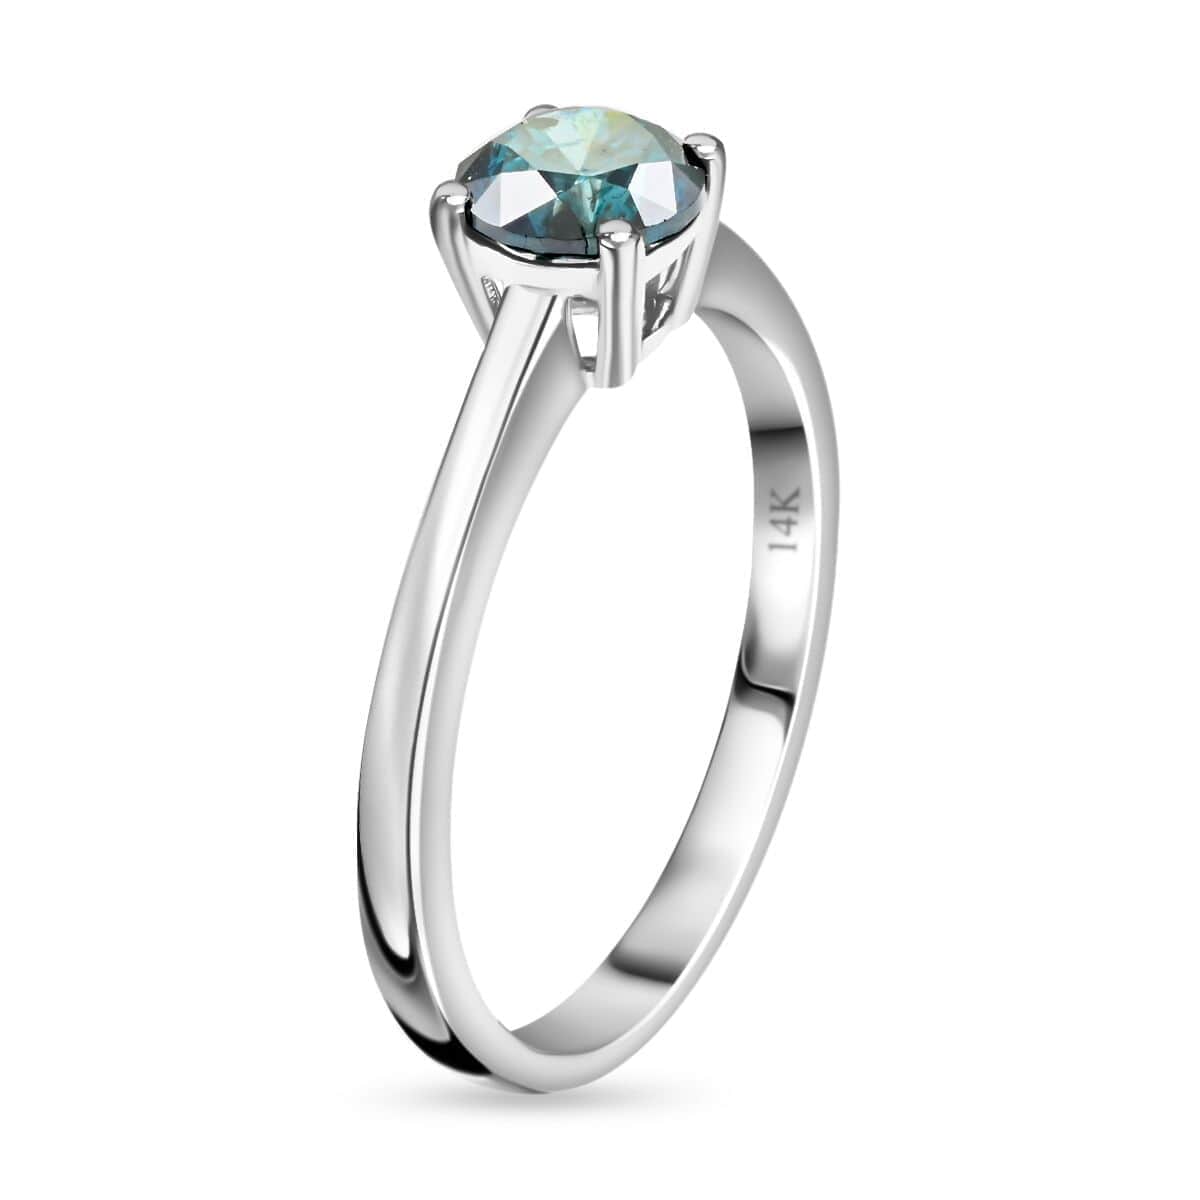 Luxoro 14K White Gold Venice Blue Diamond (I1-I2) Ring (Size 6.0) 1.00 ctw image number 3